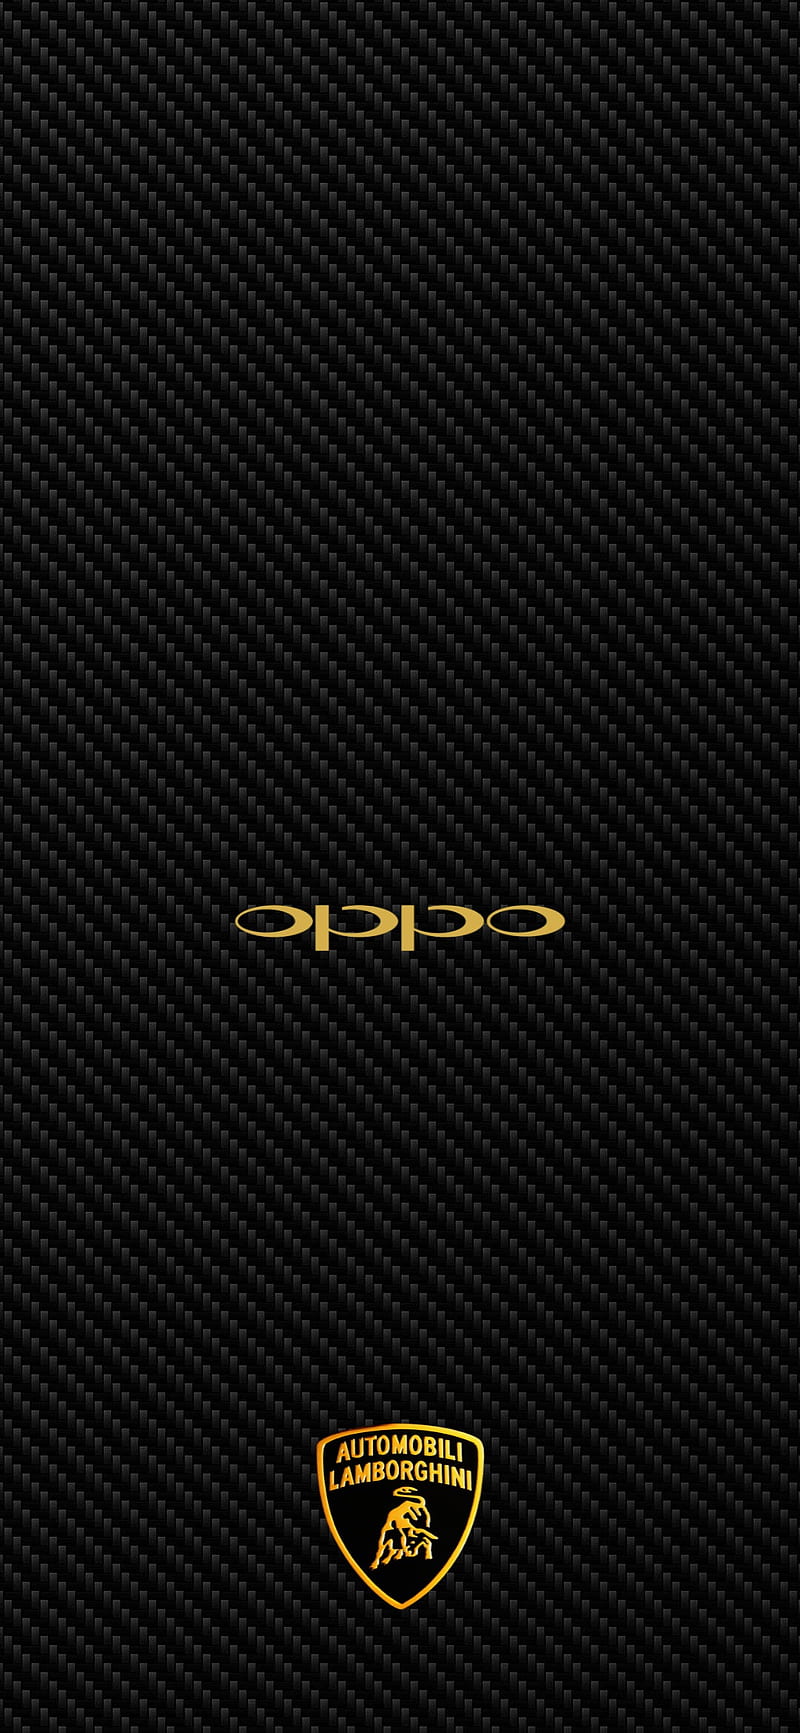 Với Oppo A53, bạn không chỉ có một màn hình HD tuyệt đẹp mà còn được tùy chọn nhiều hình nền độc đáo. Từ những khung cảnh tuyệt đẹp đến những hình ảnh đầy màu sắc, hãy xem ảnh để tìm kiếm tấm hình nền hoàn hảo cho Oppo A53 của bạn.